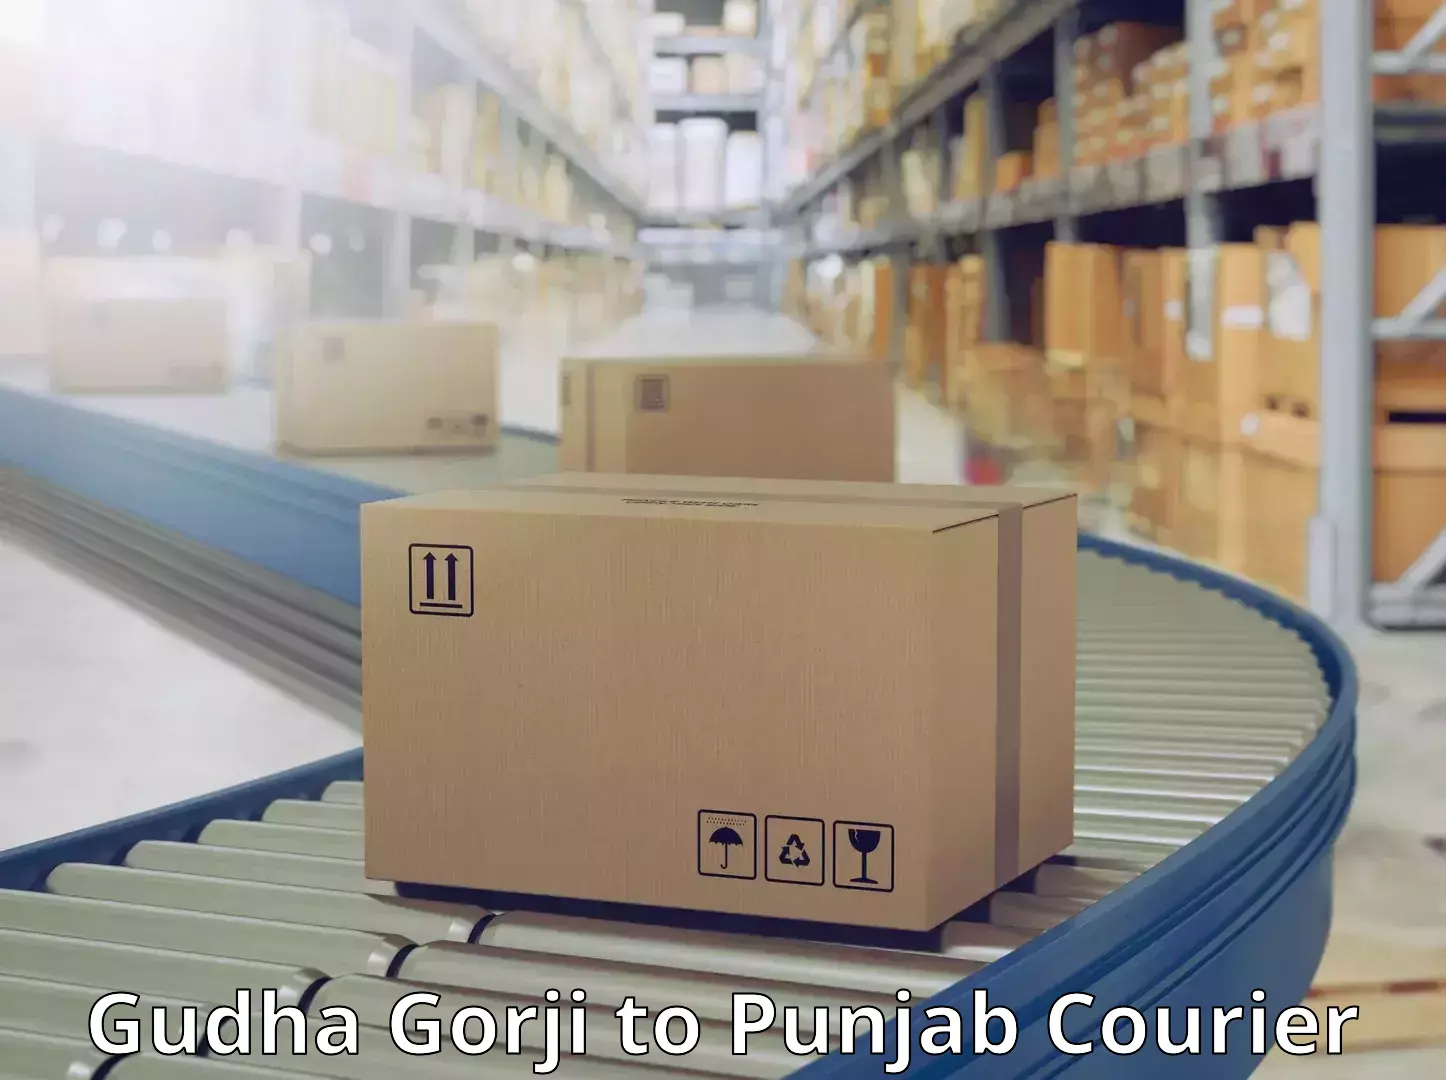 Efficient parcel tracking Gudha Gorji to Mukerian